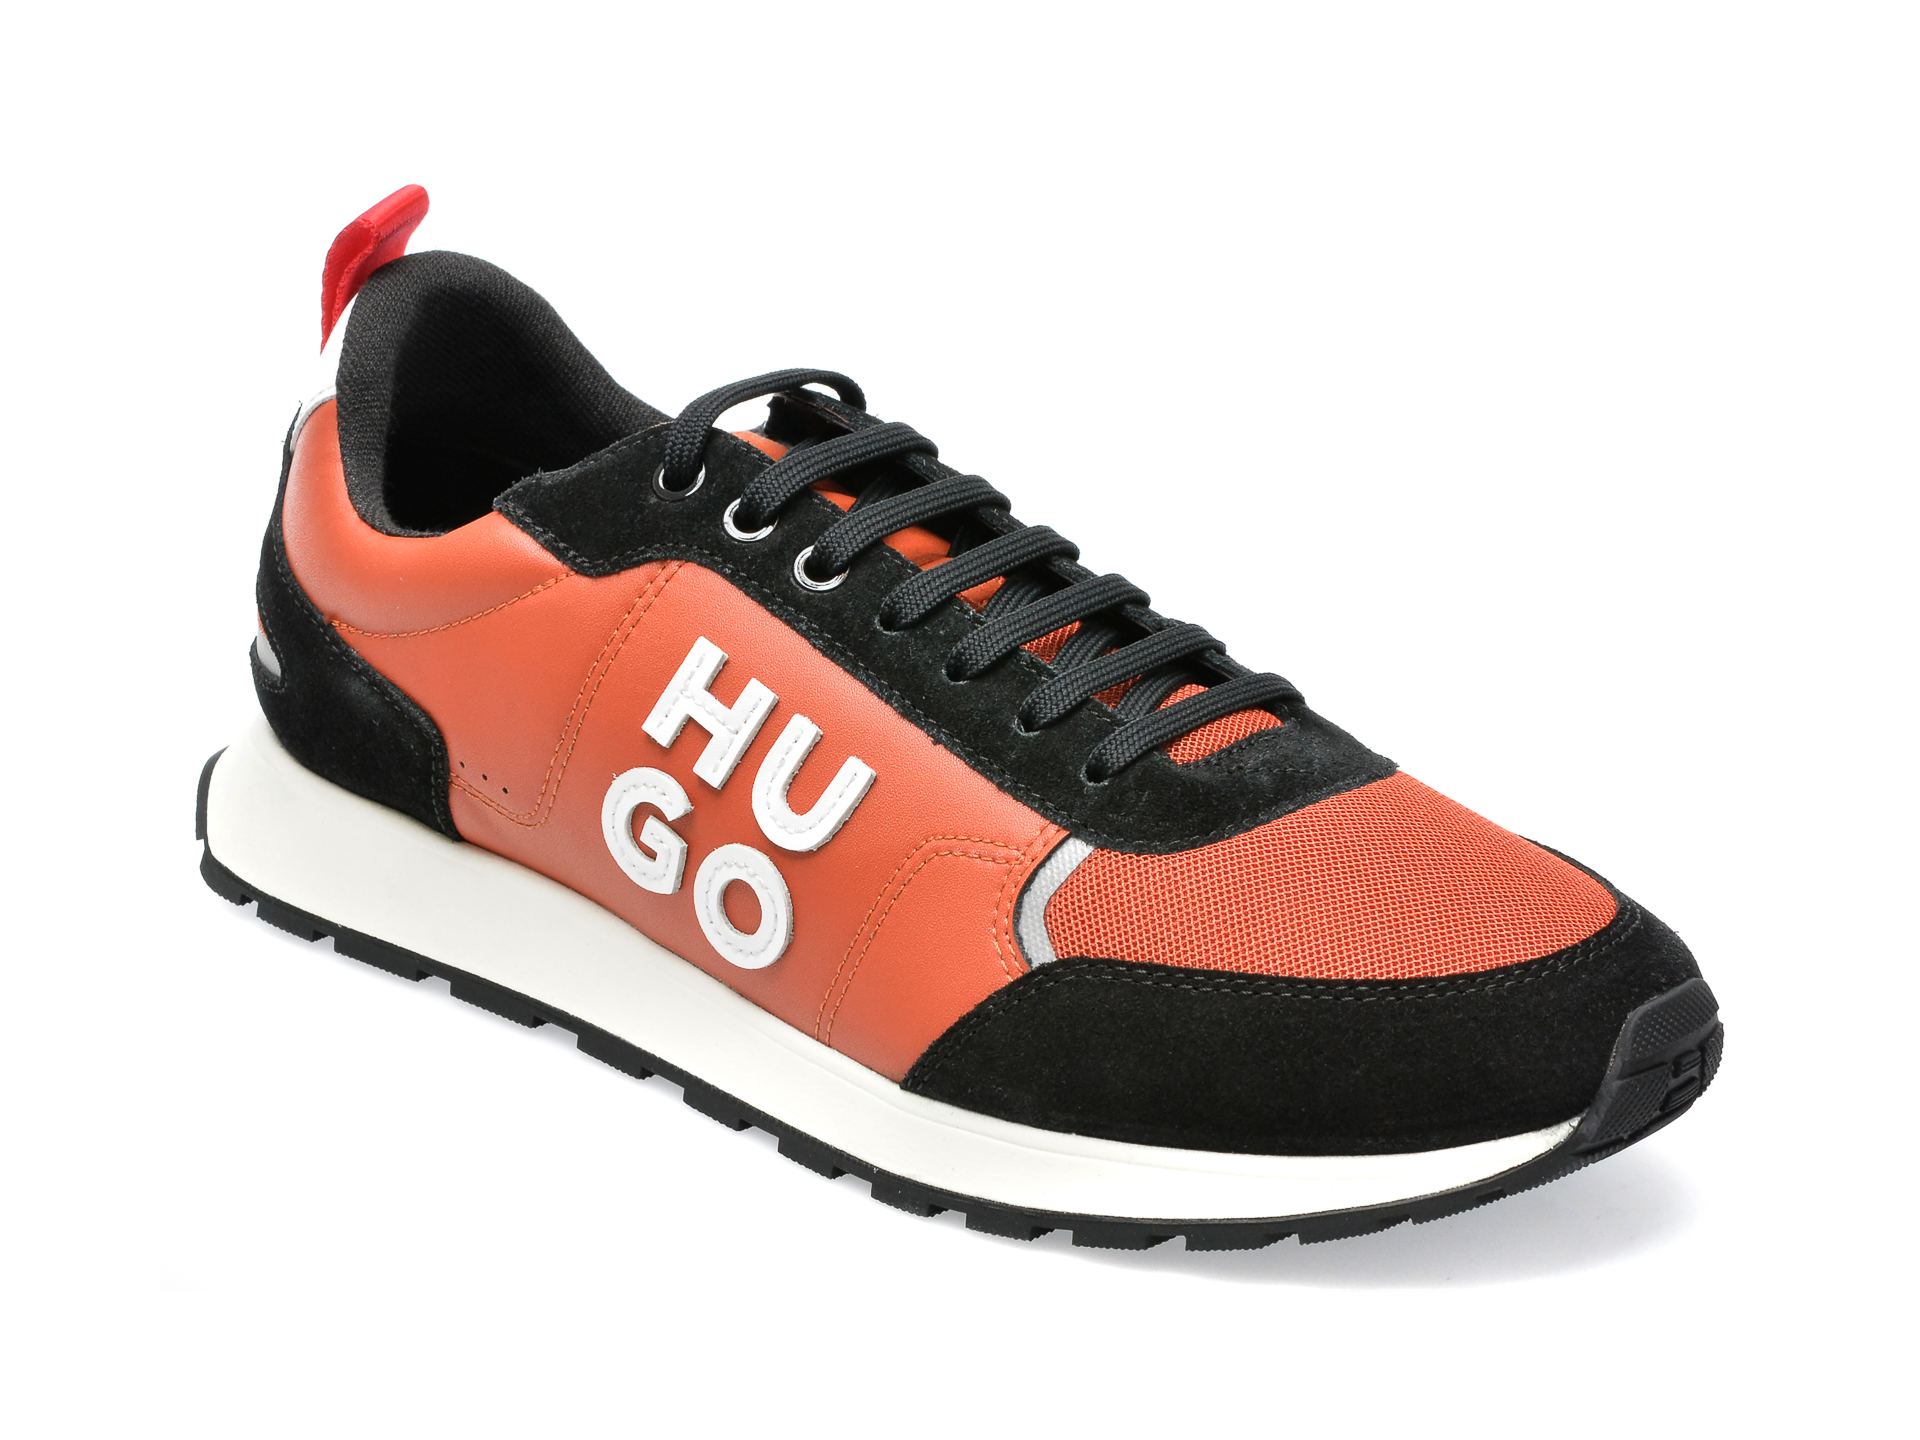 Pantofi sport HUGO BOSS portocalii, 303, din piele ecologica BARBATI 2023-09-28